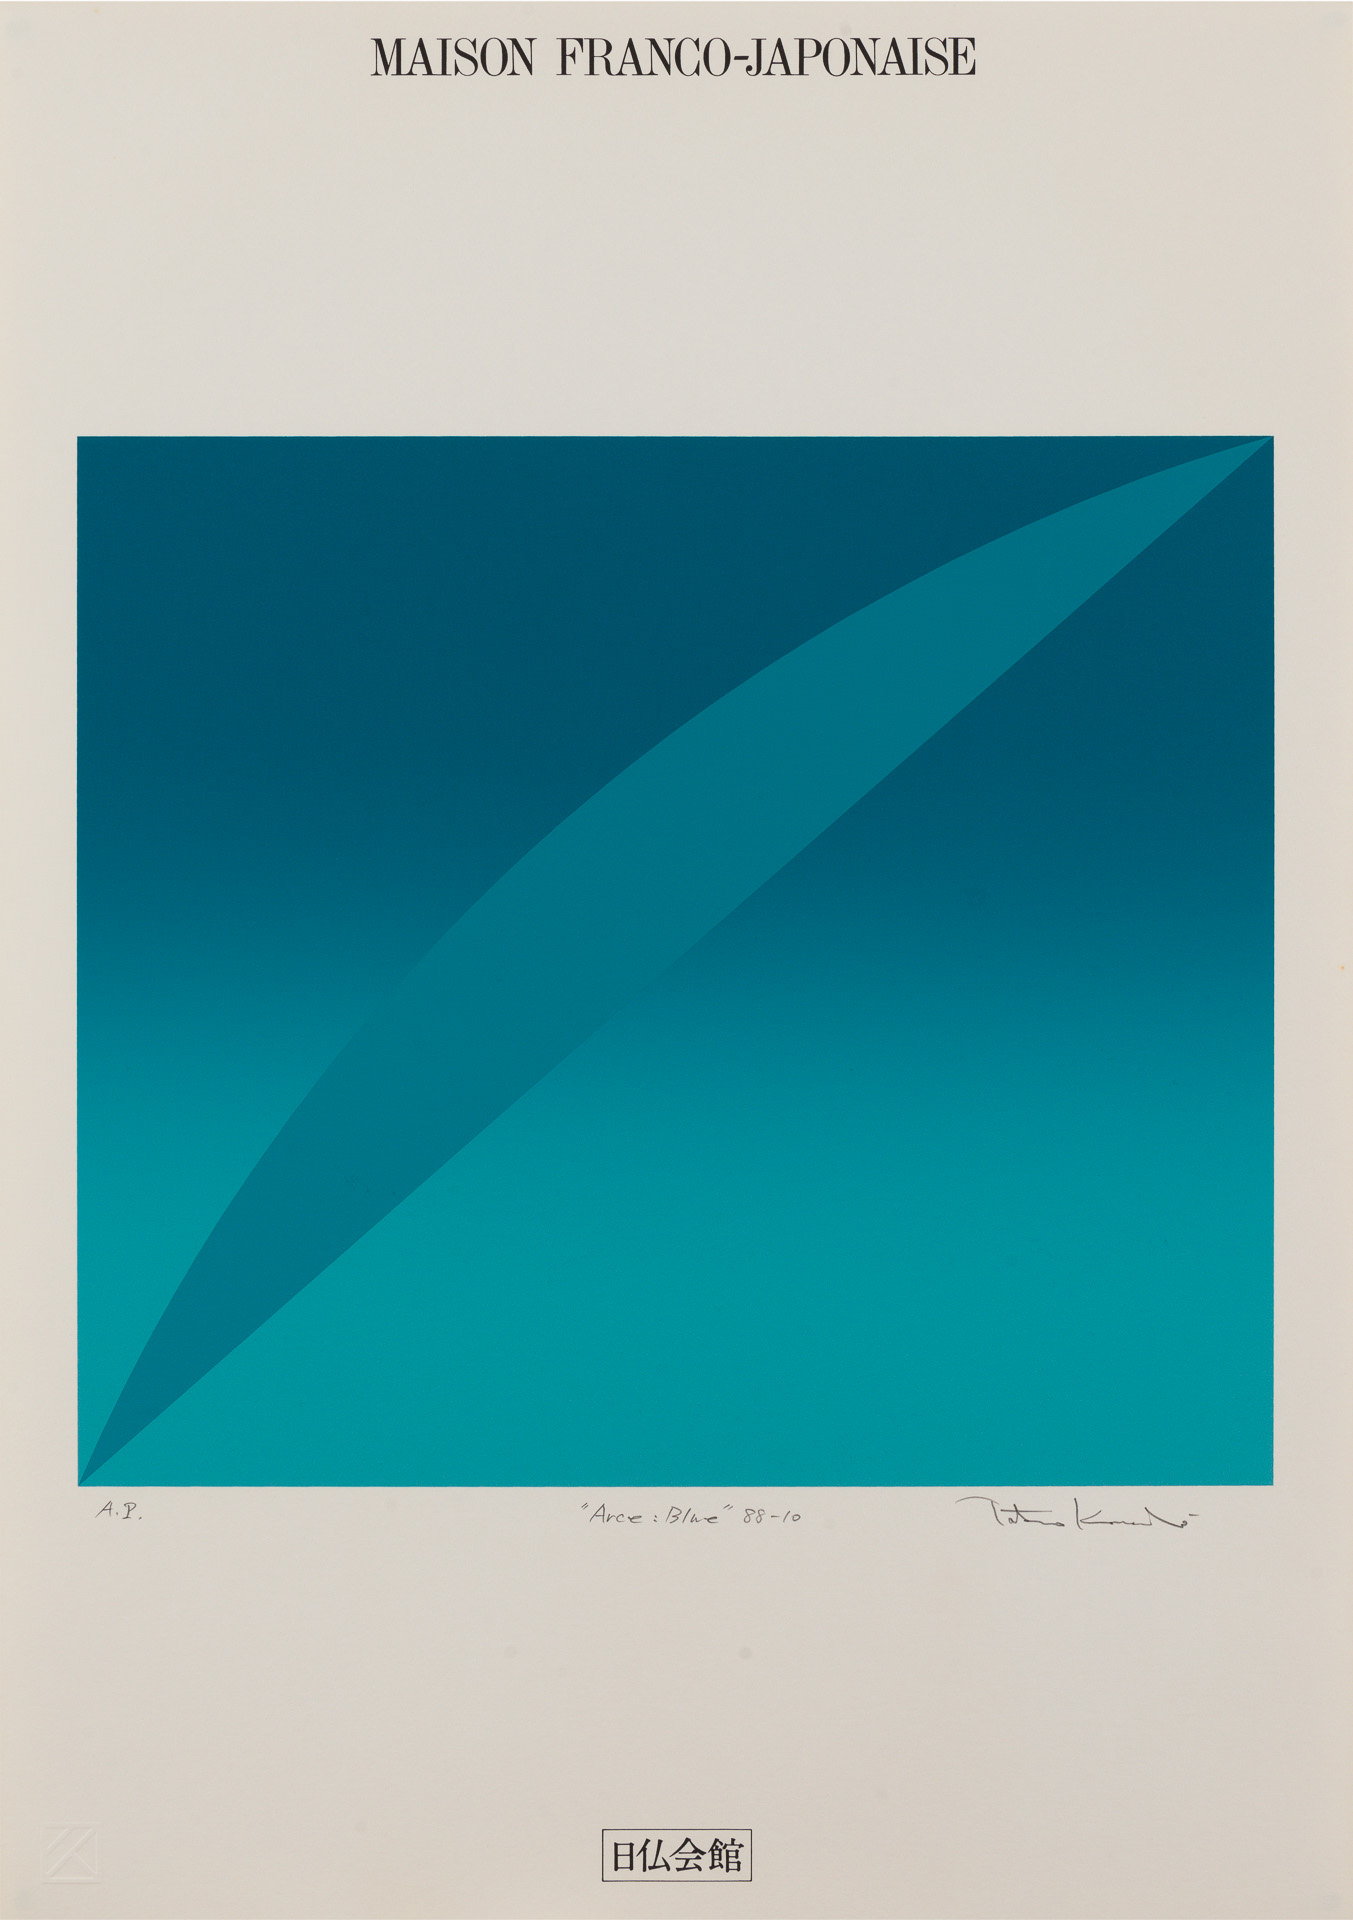 近藤竜男〈Arce: Blue 88-10〉, シルクスクリーン・紙, 51.2×36.4, 日仏会館ポスター展, 1988